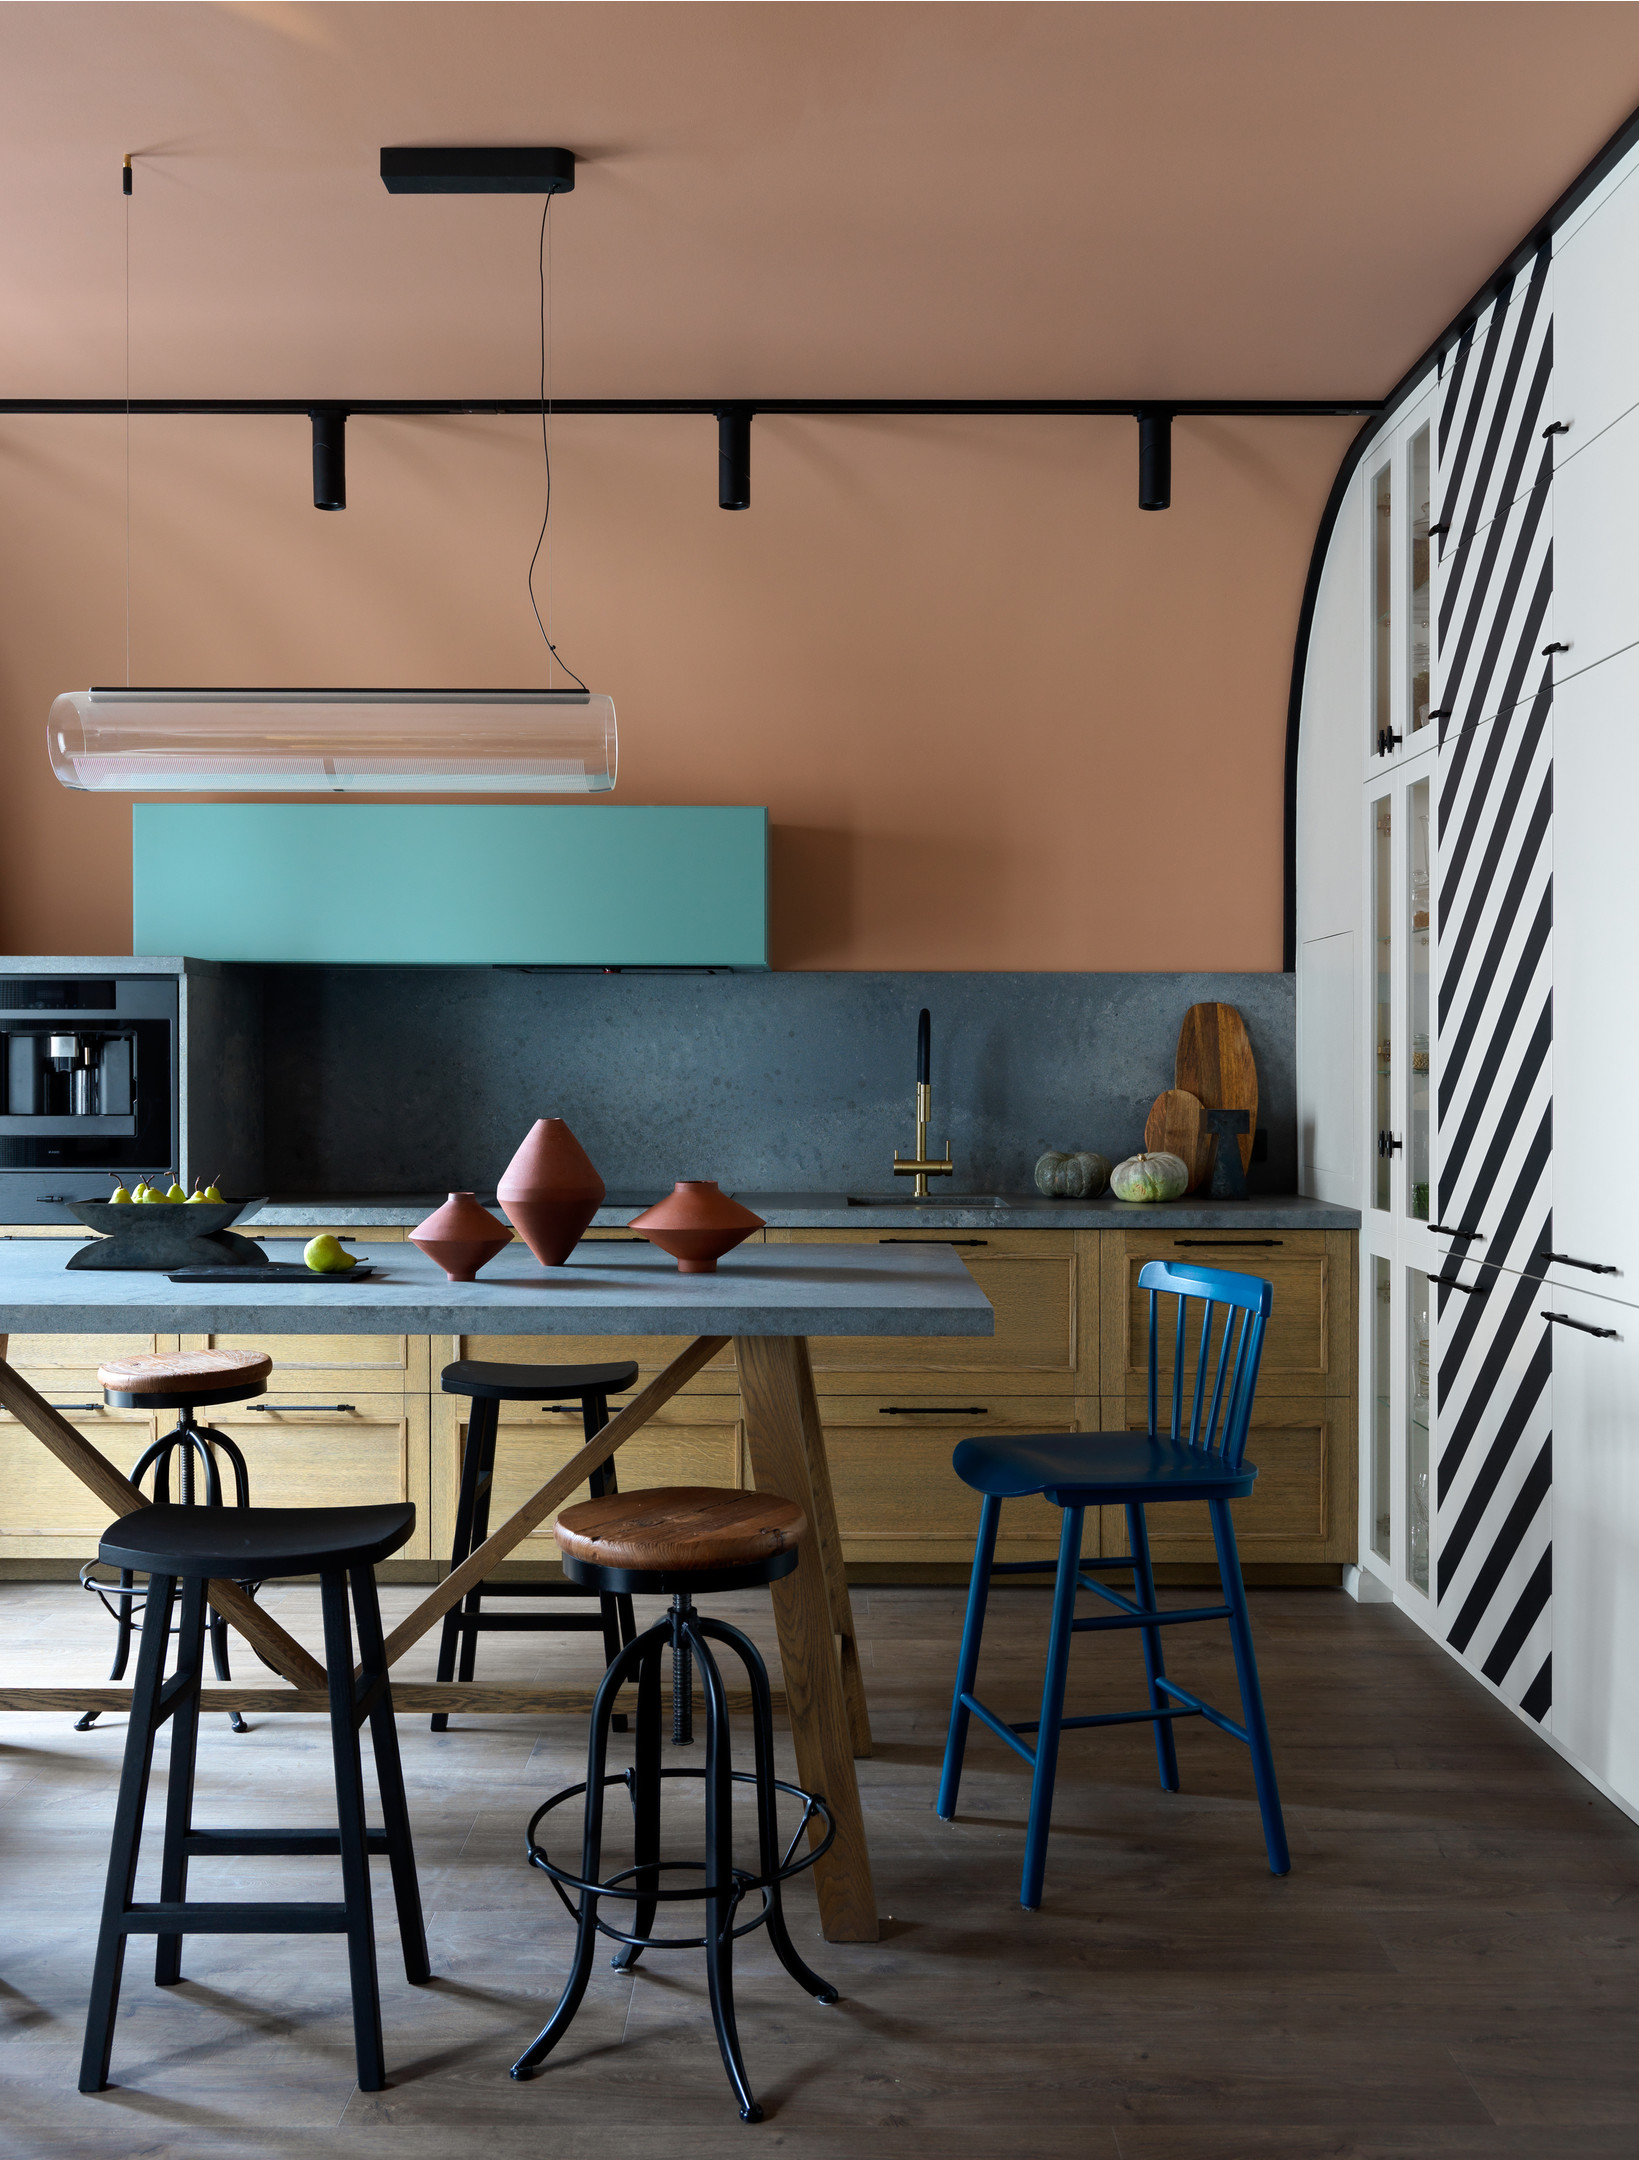 Phòng ăn được bố trí giữa phòng khách và phòng bếp, với chiếc bàn hình chữ nhật đơn giản nhưng xung quanh là những chiếc ghế đủ sắc màu và kiểu dáng tạo nên sự đa dạng, phá cách thay vì chọn bàn ghế đồng bộ.